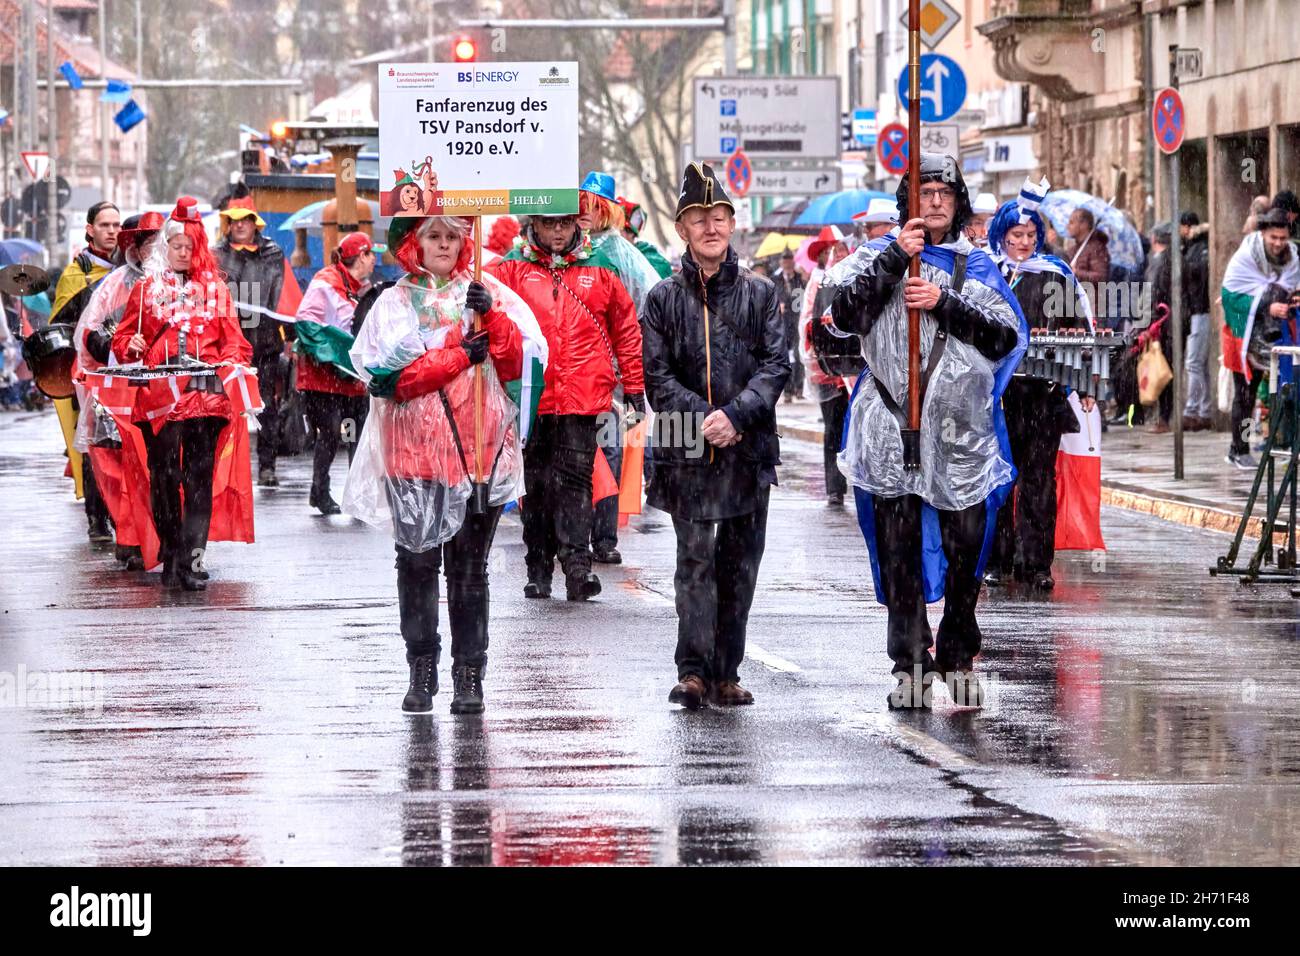 Braunschweig, Allemagne, 23 février 2020 : procession fanfare au défilé de carnaval dans la déverse avec des marches en imperméable transparentes à travers la ville Banque D'Images